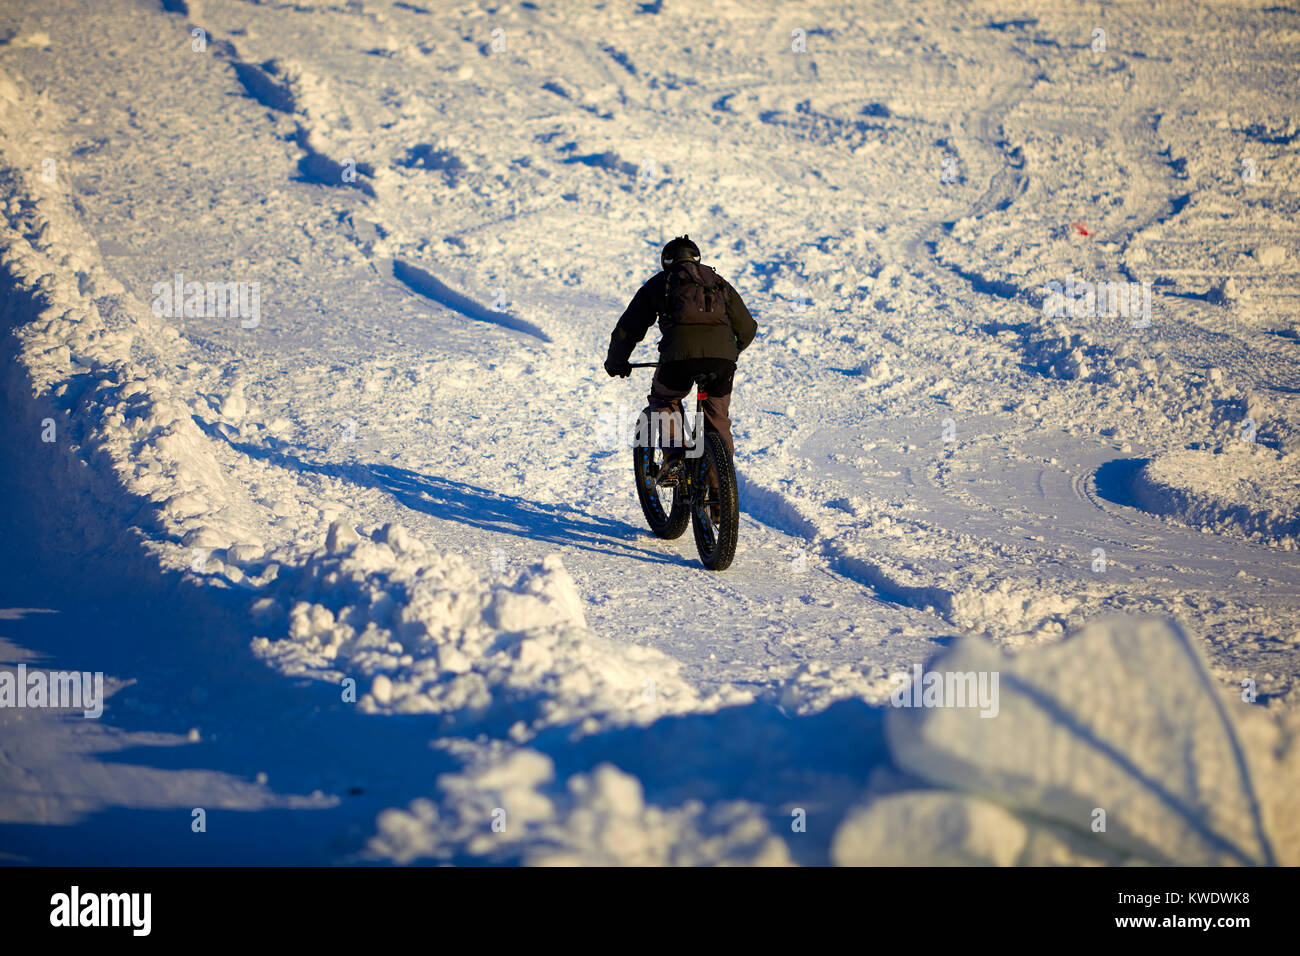 Fat Bike takes to the snow Stock Photo